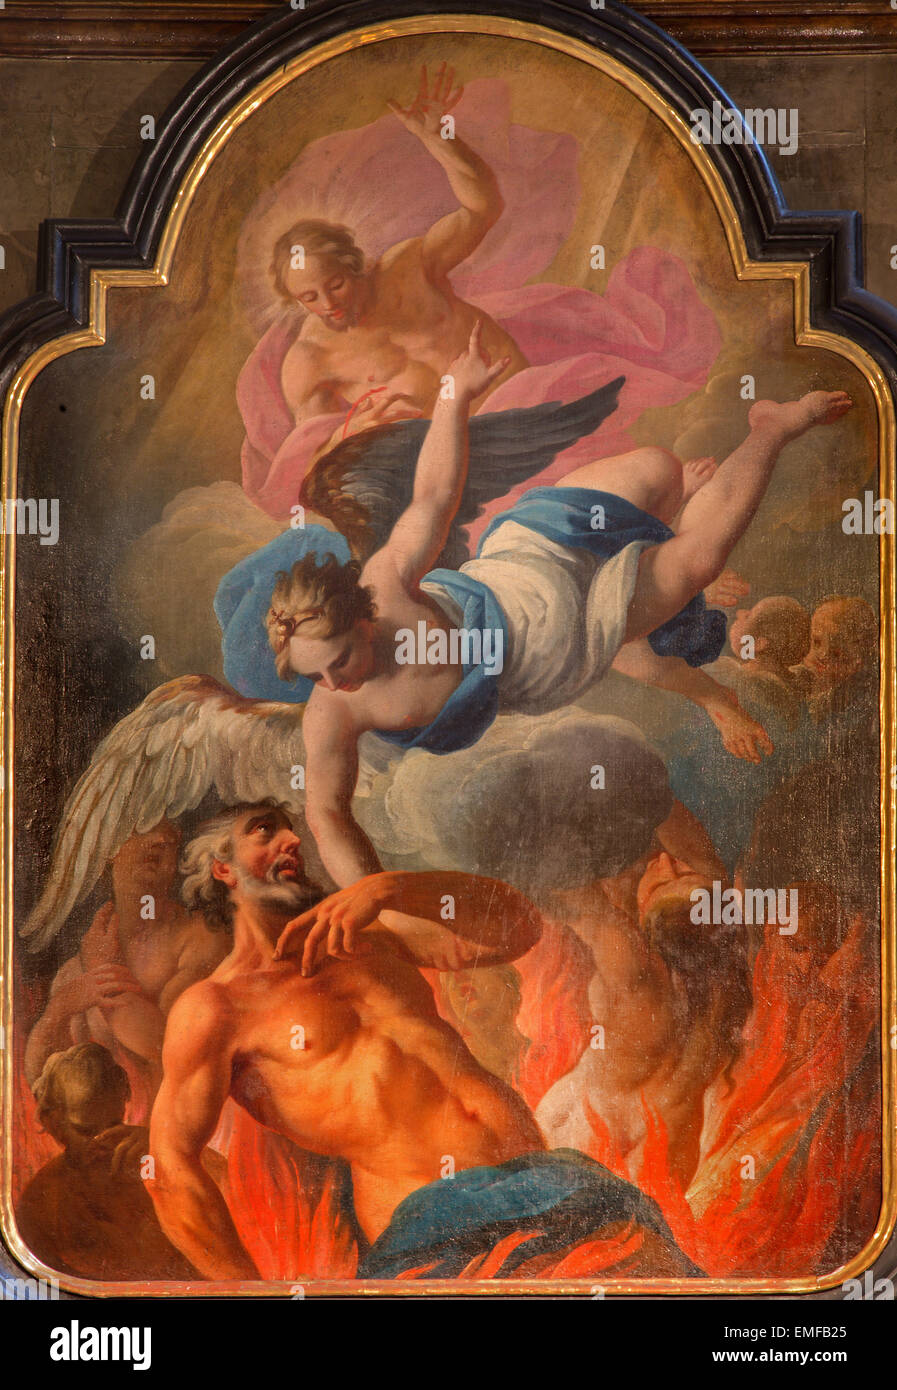 Viena, Austria - Febrero 17, 2014: la pintura de la liberación del alma forma purgatorio en barroco st. Annes iglesia. Foto de stock